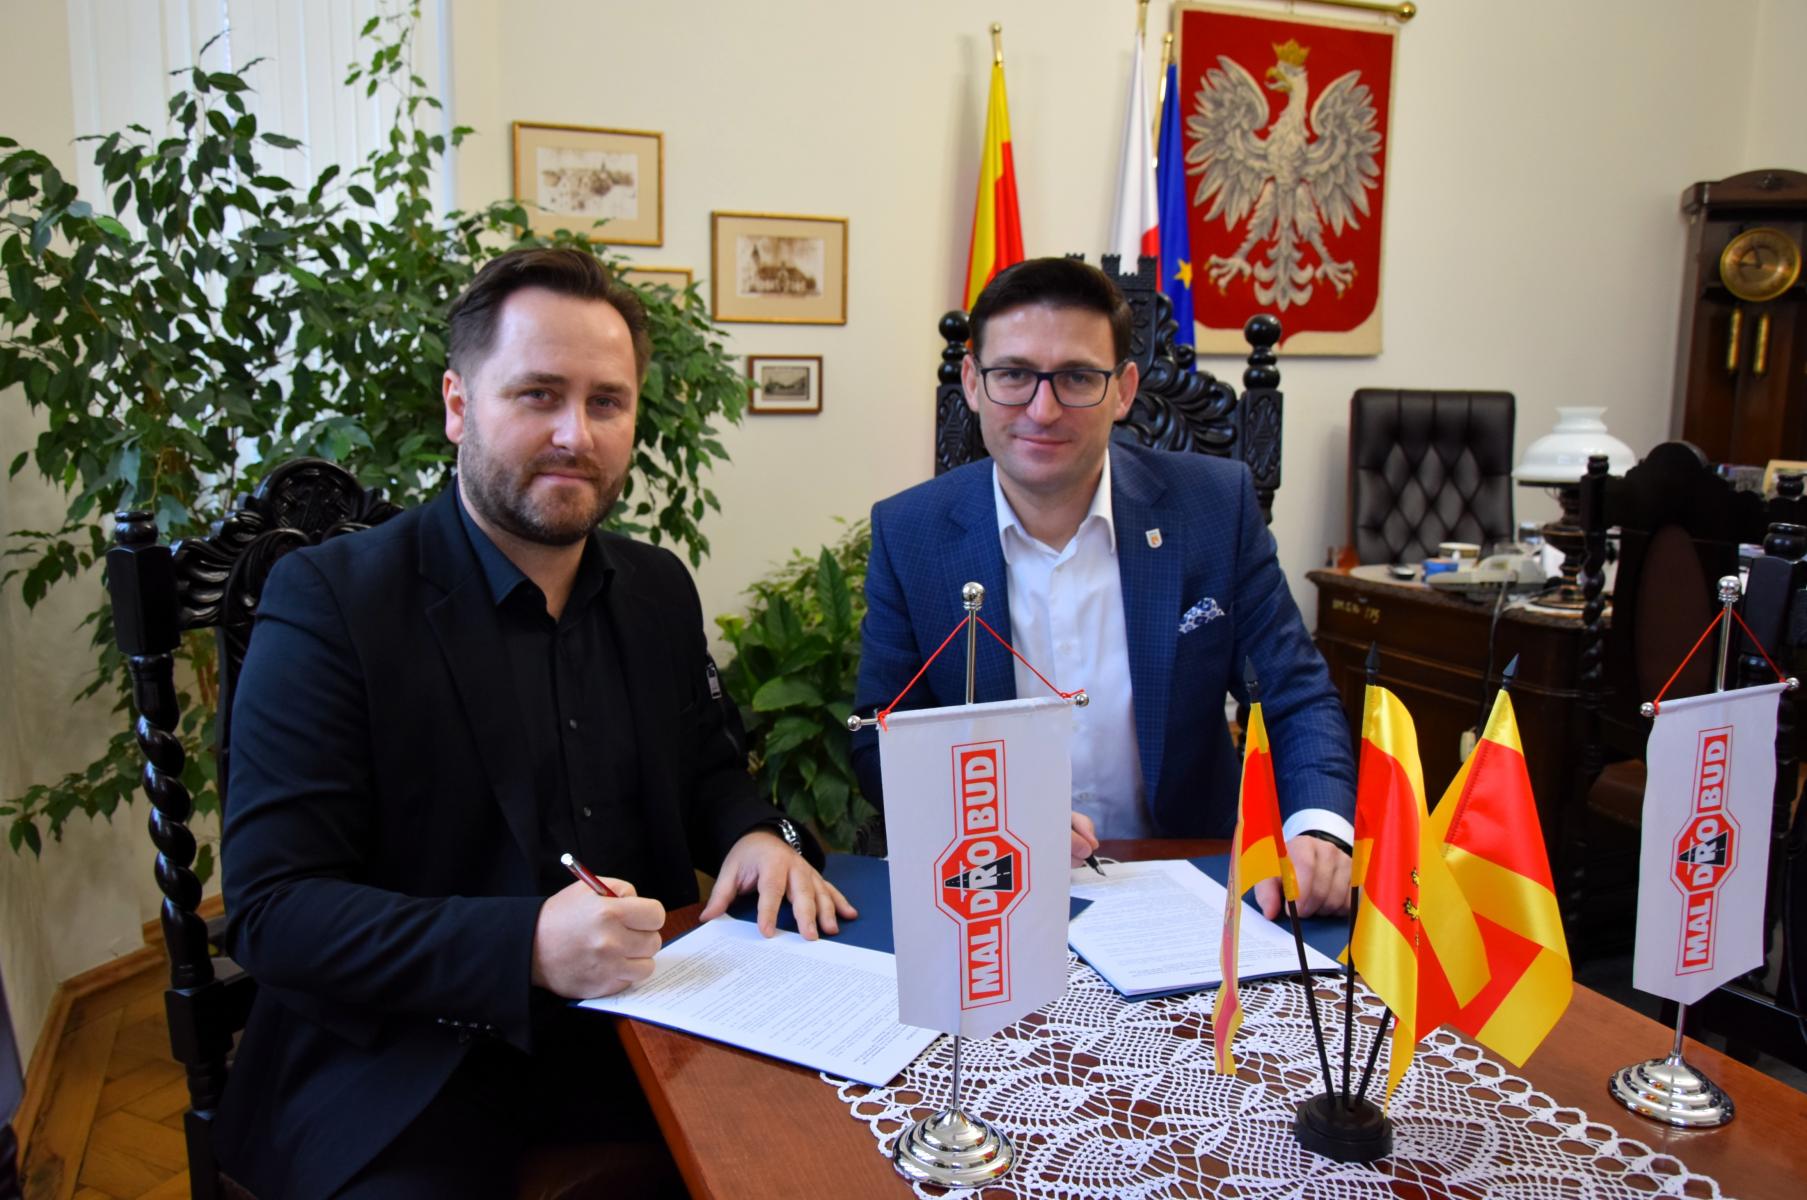 Od lewej siedzą przy stole i podpisują dokumenty: Łukasz Malinowicz, Grzegorz Kulbicki. Na stole stoją małe flagietki: białe z logiem maldrobud, żółto - czerwone flagi Dębna. W tle na ścianie wisi godło Polski. 